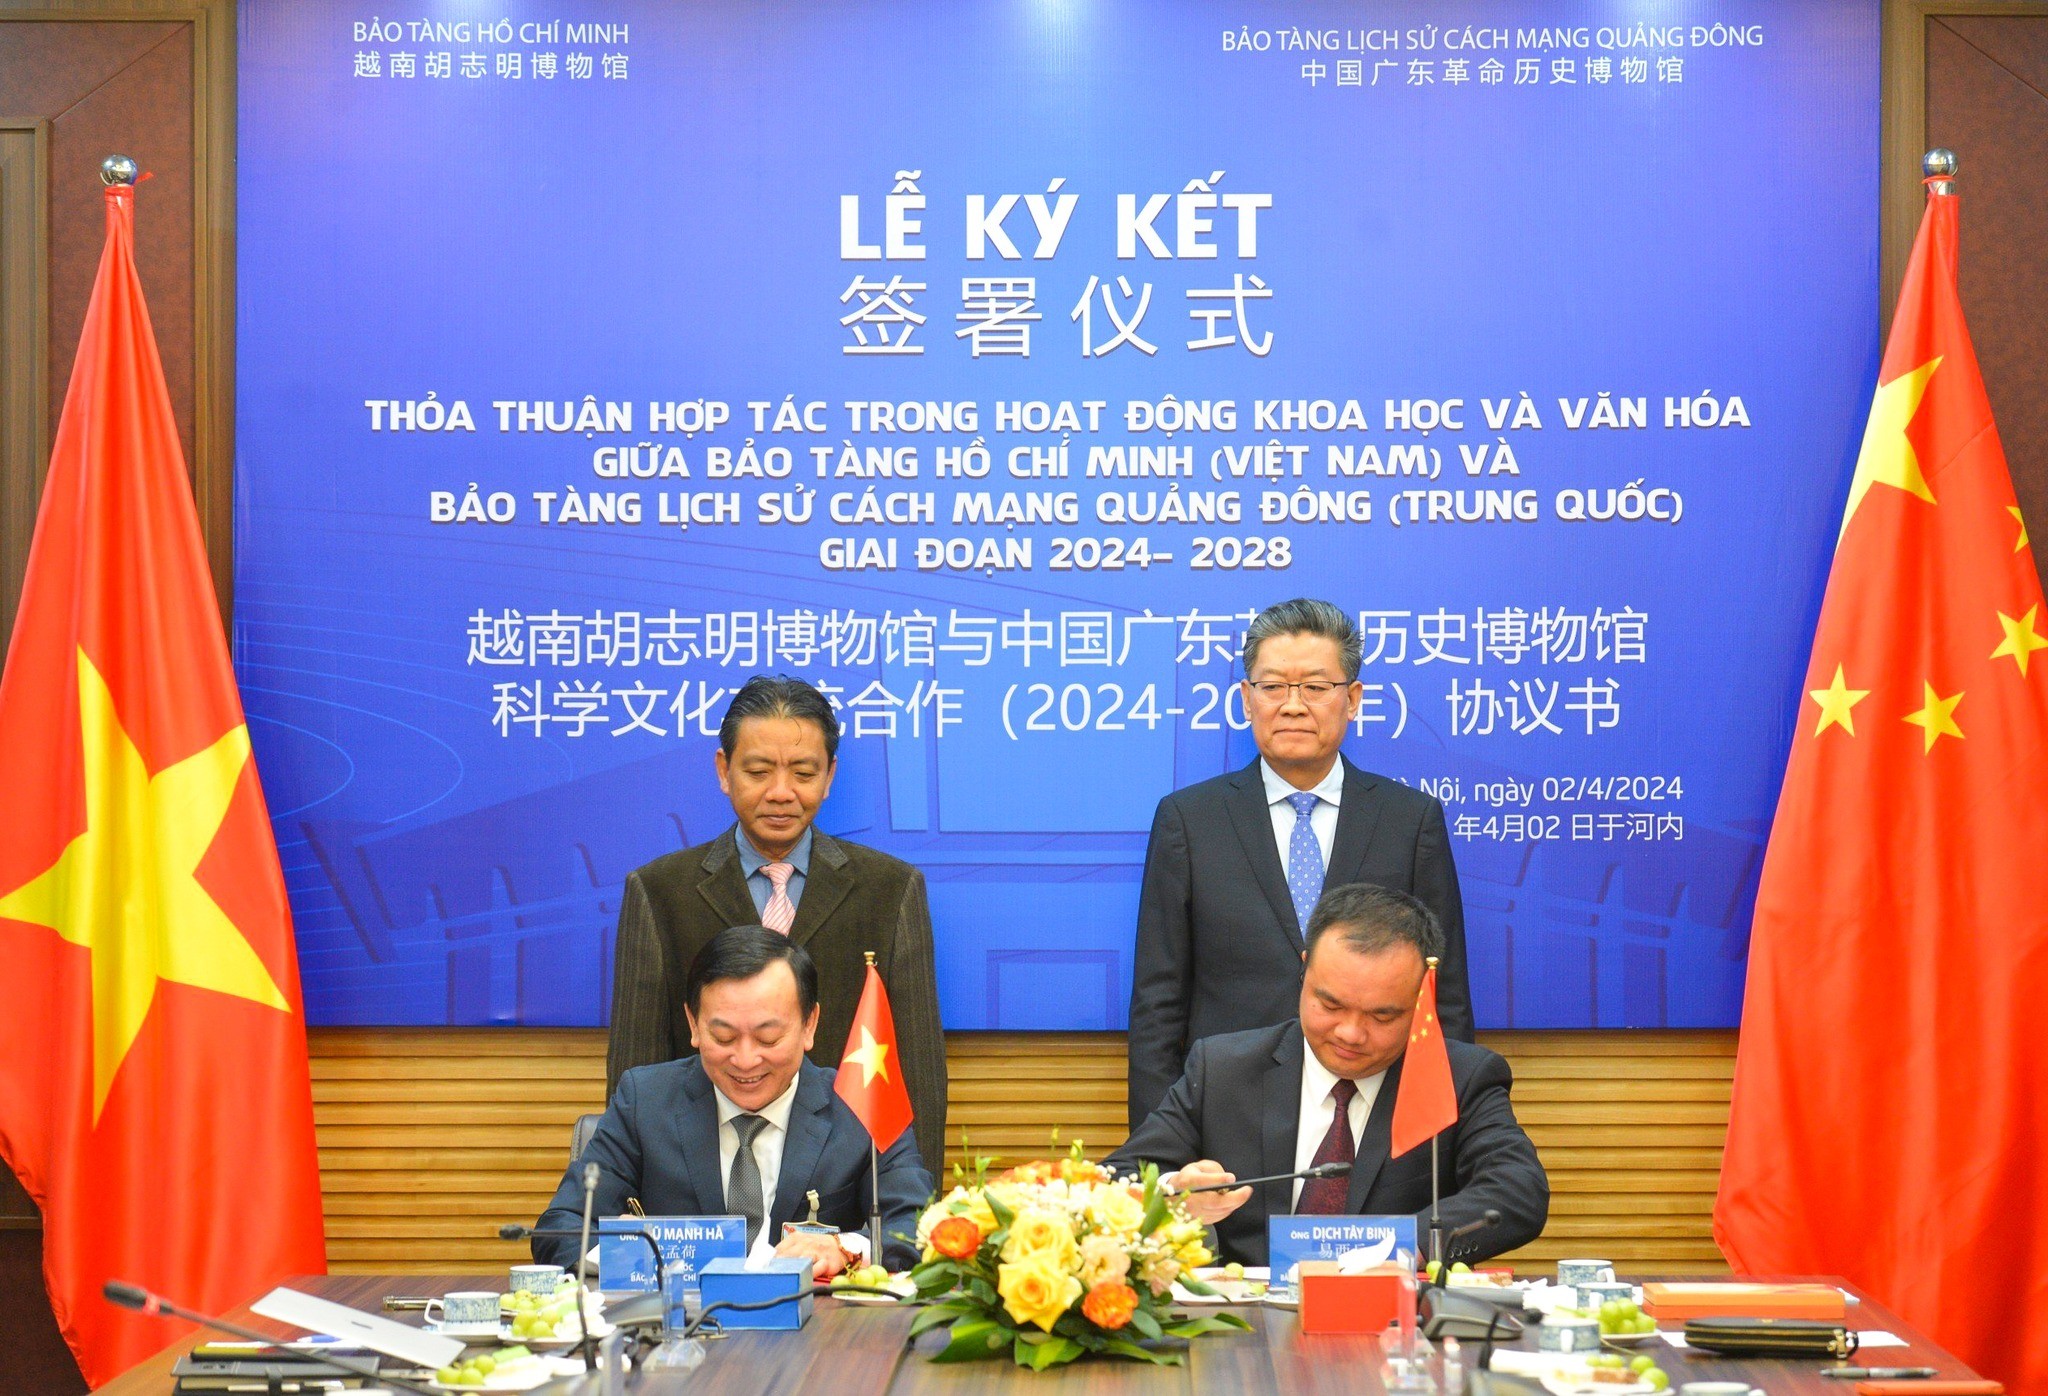 Lễ ký kết Thỏa thuận hợp tác trong hoạt động khoa học và văn hóa giữa Bảo tàng Hồ Chí Minh và Bảo tàng Lịch sử cách mạng Quảng Đông, Trung Quốc giai đoạn 2024-2028. (Ảnh: icd.gov.vn)